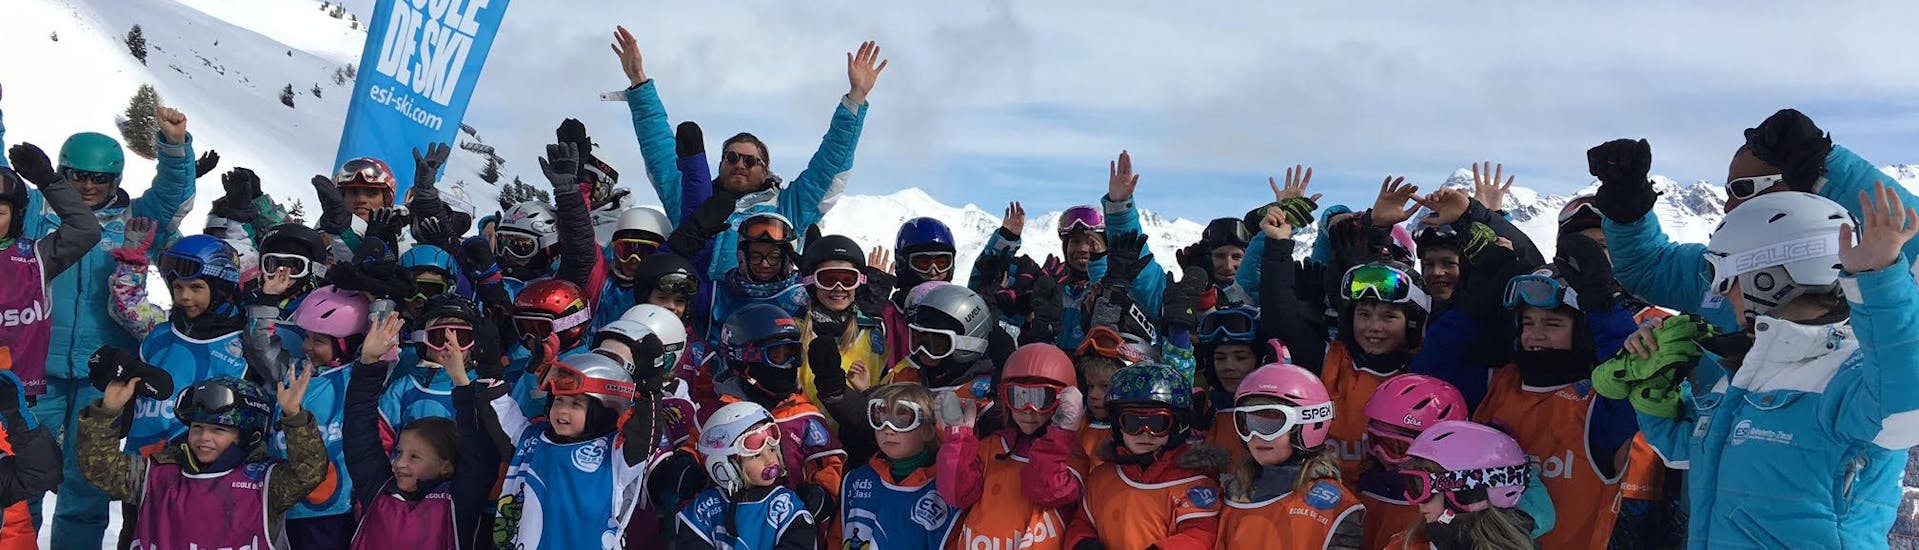 Cours de ski Enfants (5-17 ans) pour Tous niveaux.